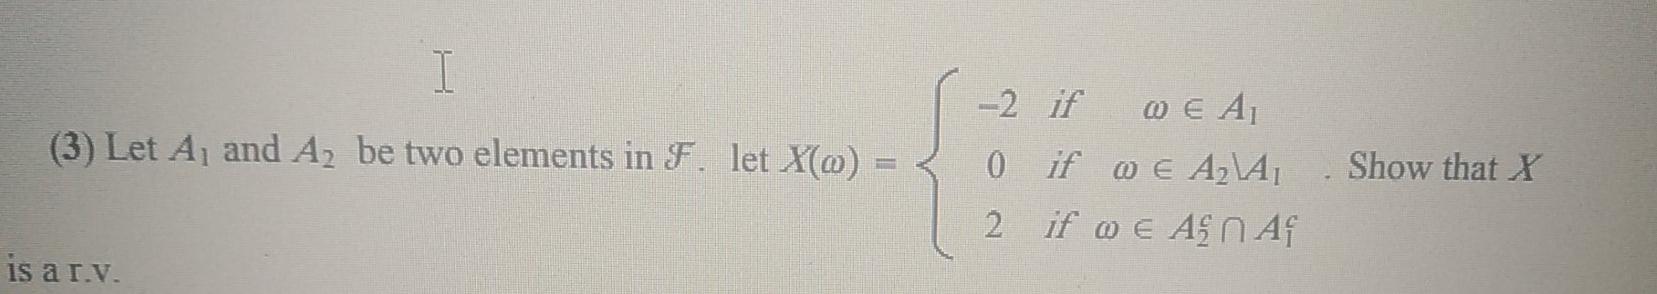 I 3 Let A And A2 Be Two Elements In F Let X 0 2 If We A 0 If 0 E A A 2 If Ue As A Show That X Is A R Y 1